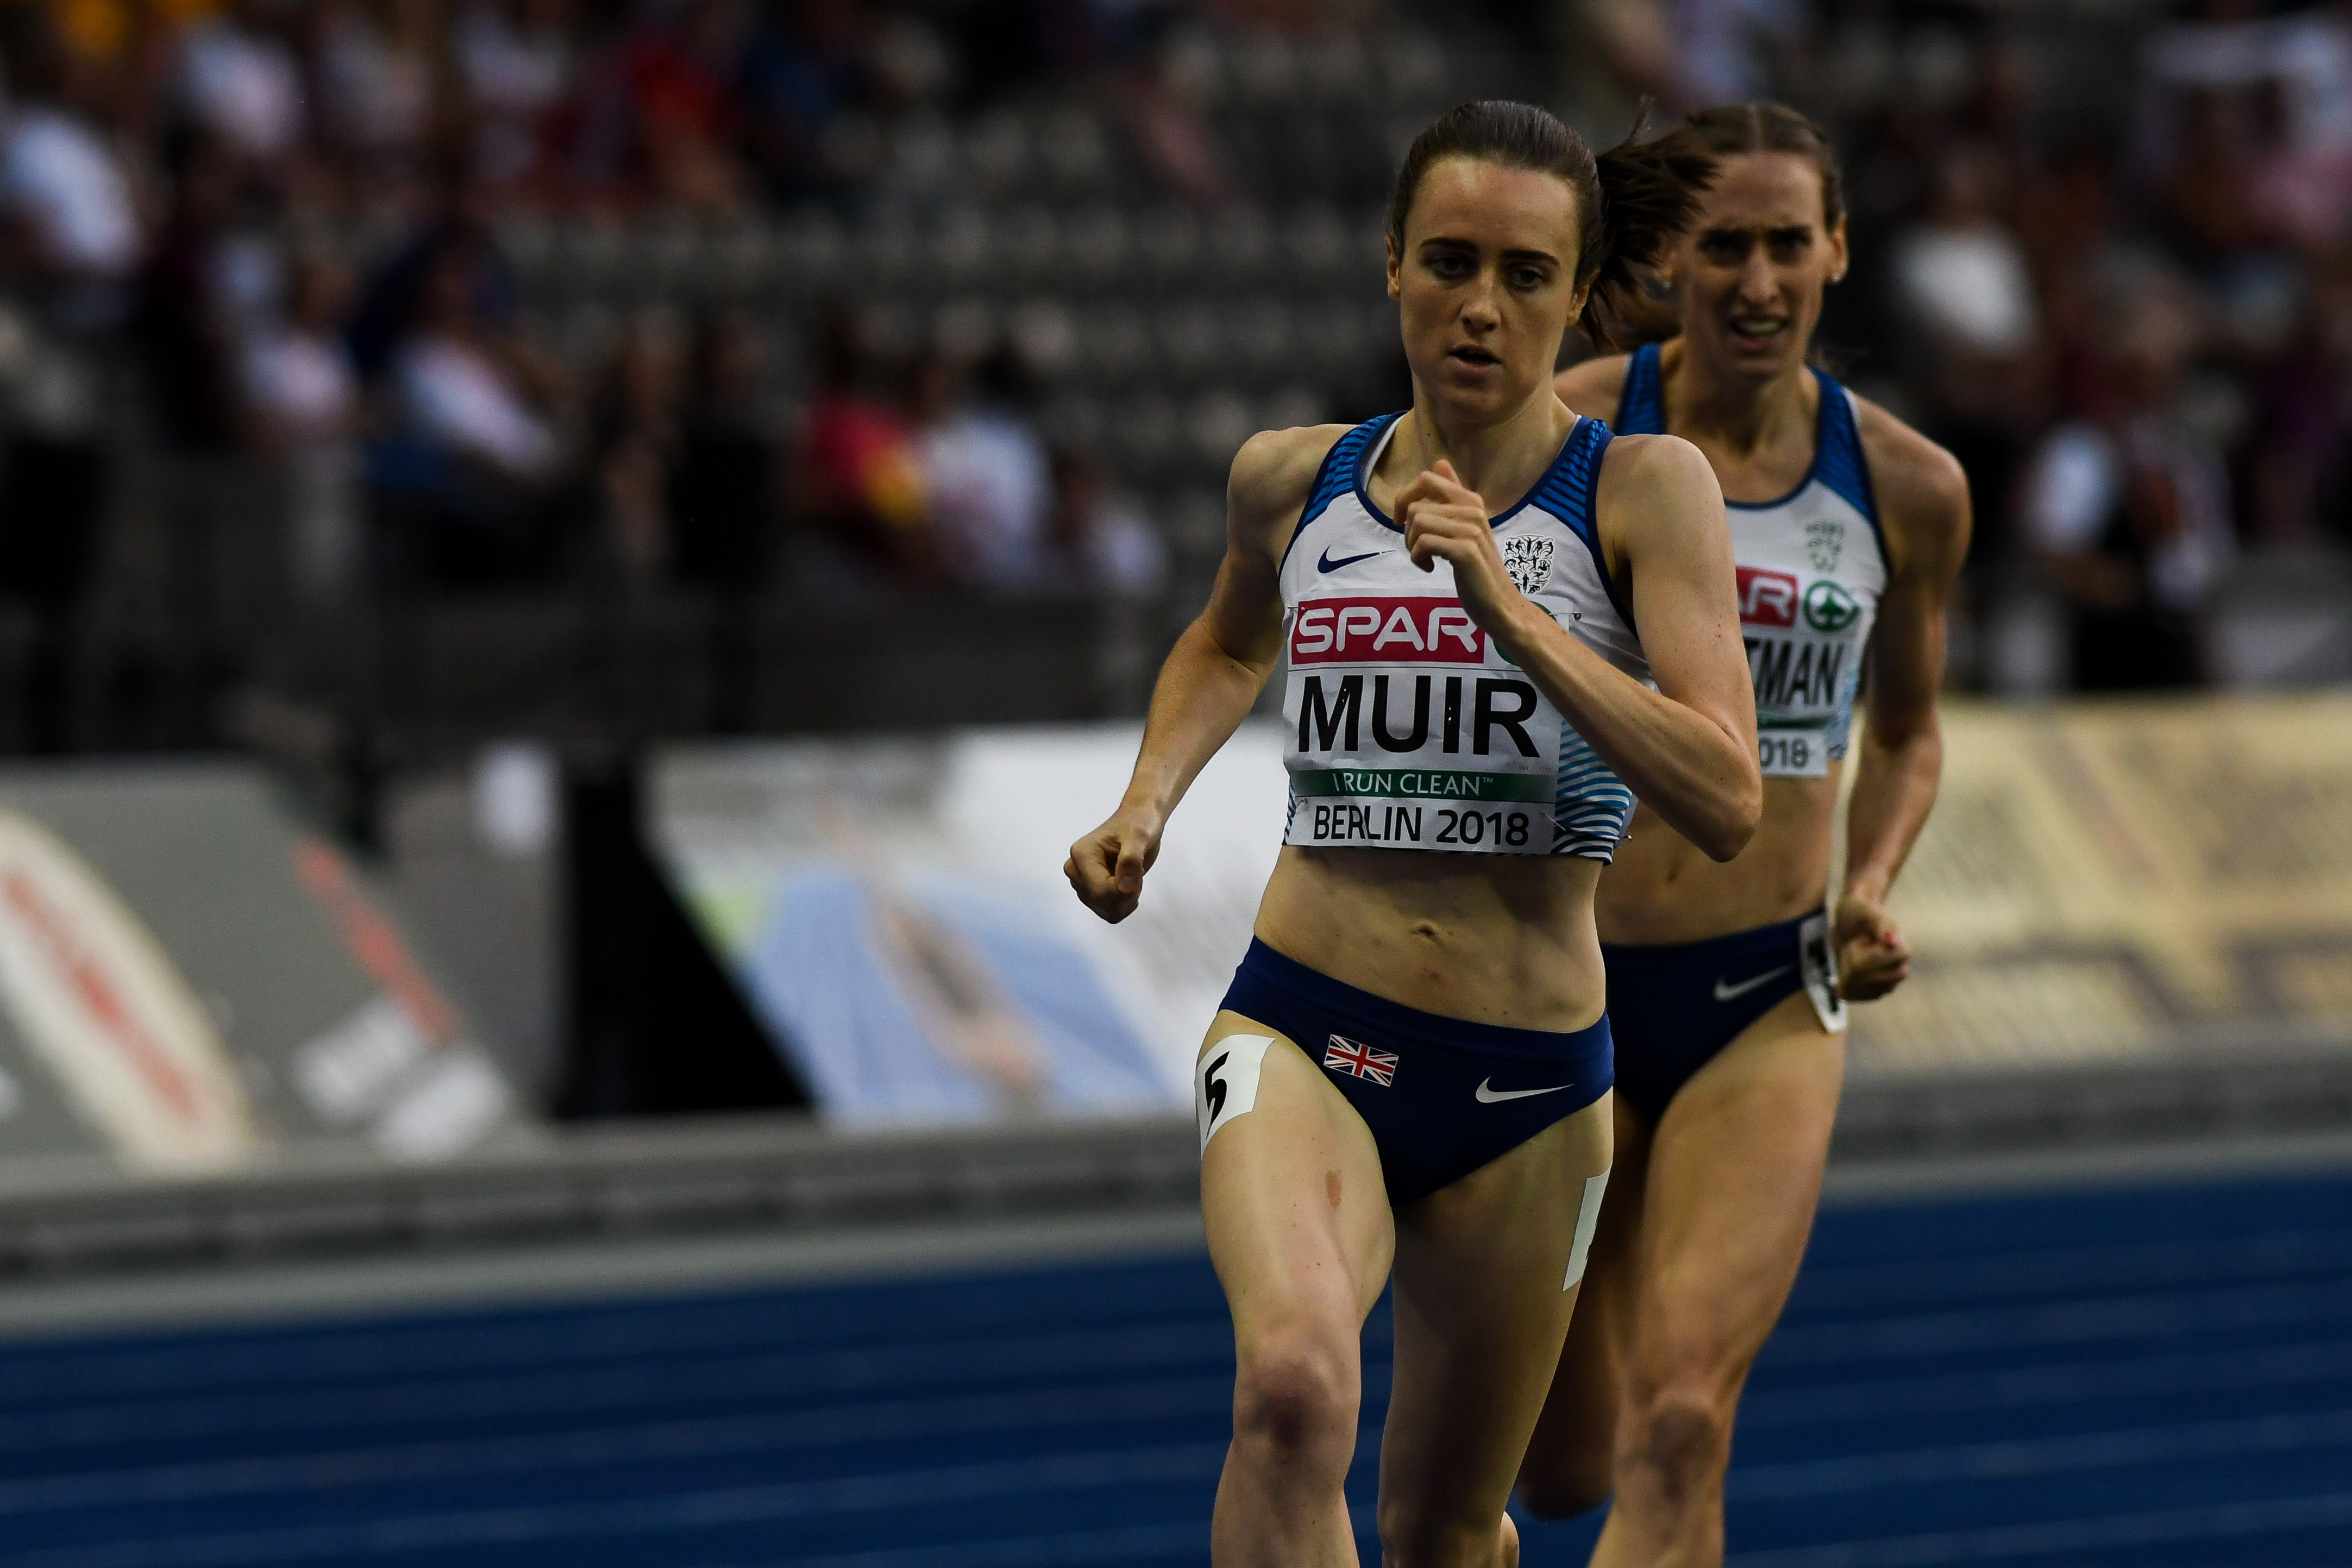 Muir 1500m  Berlijn 2018